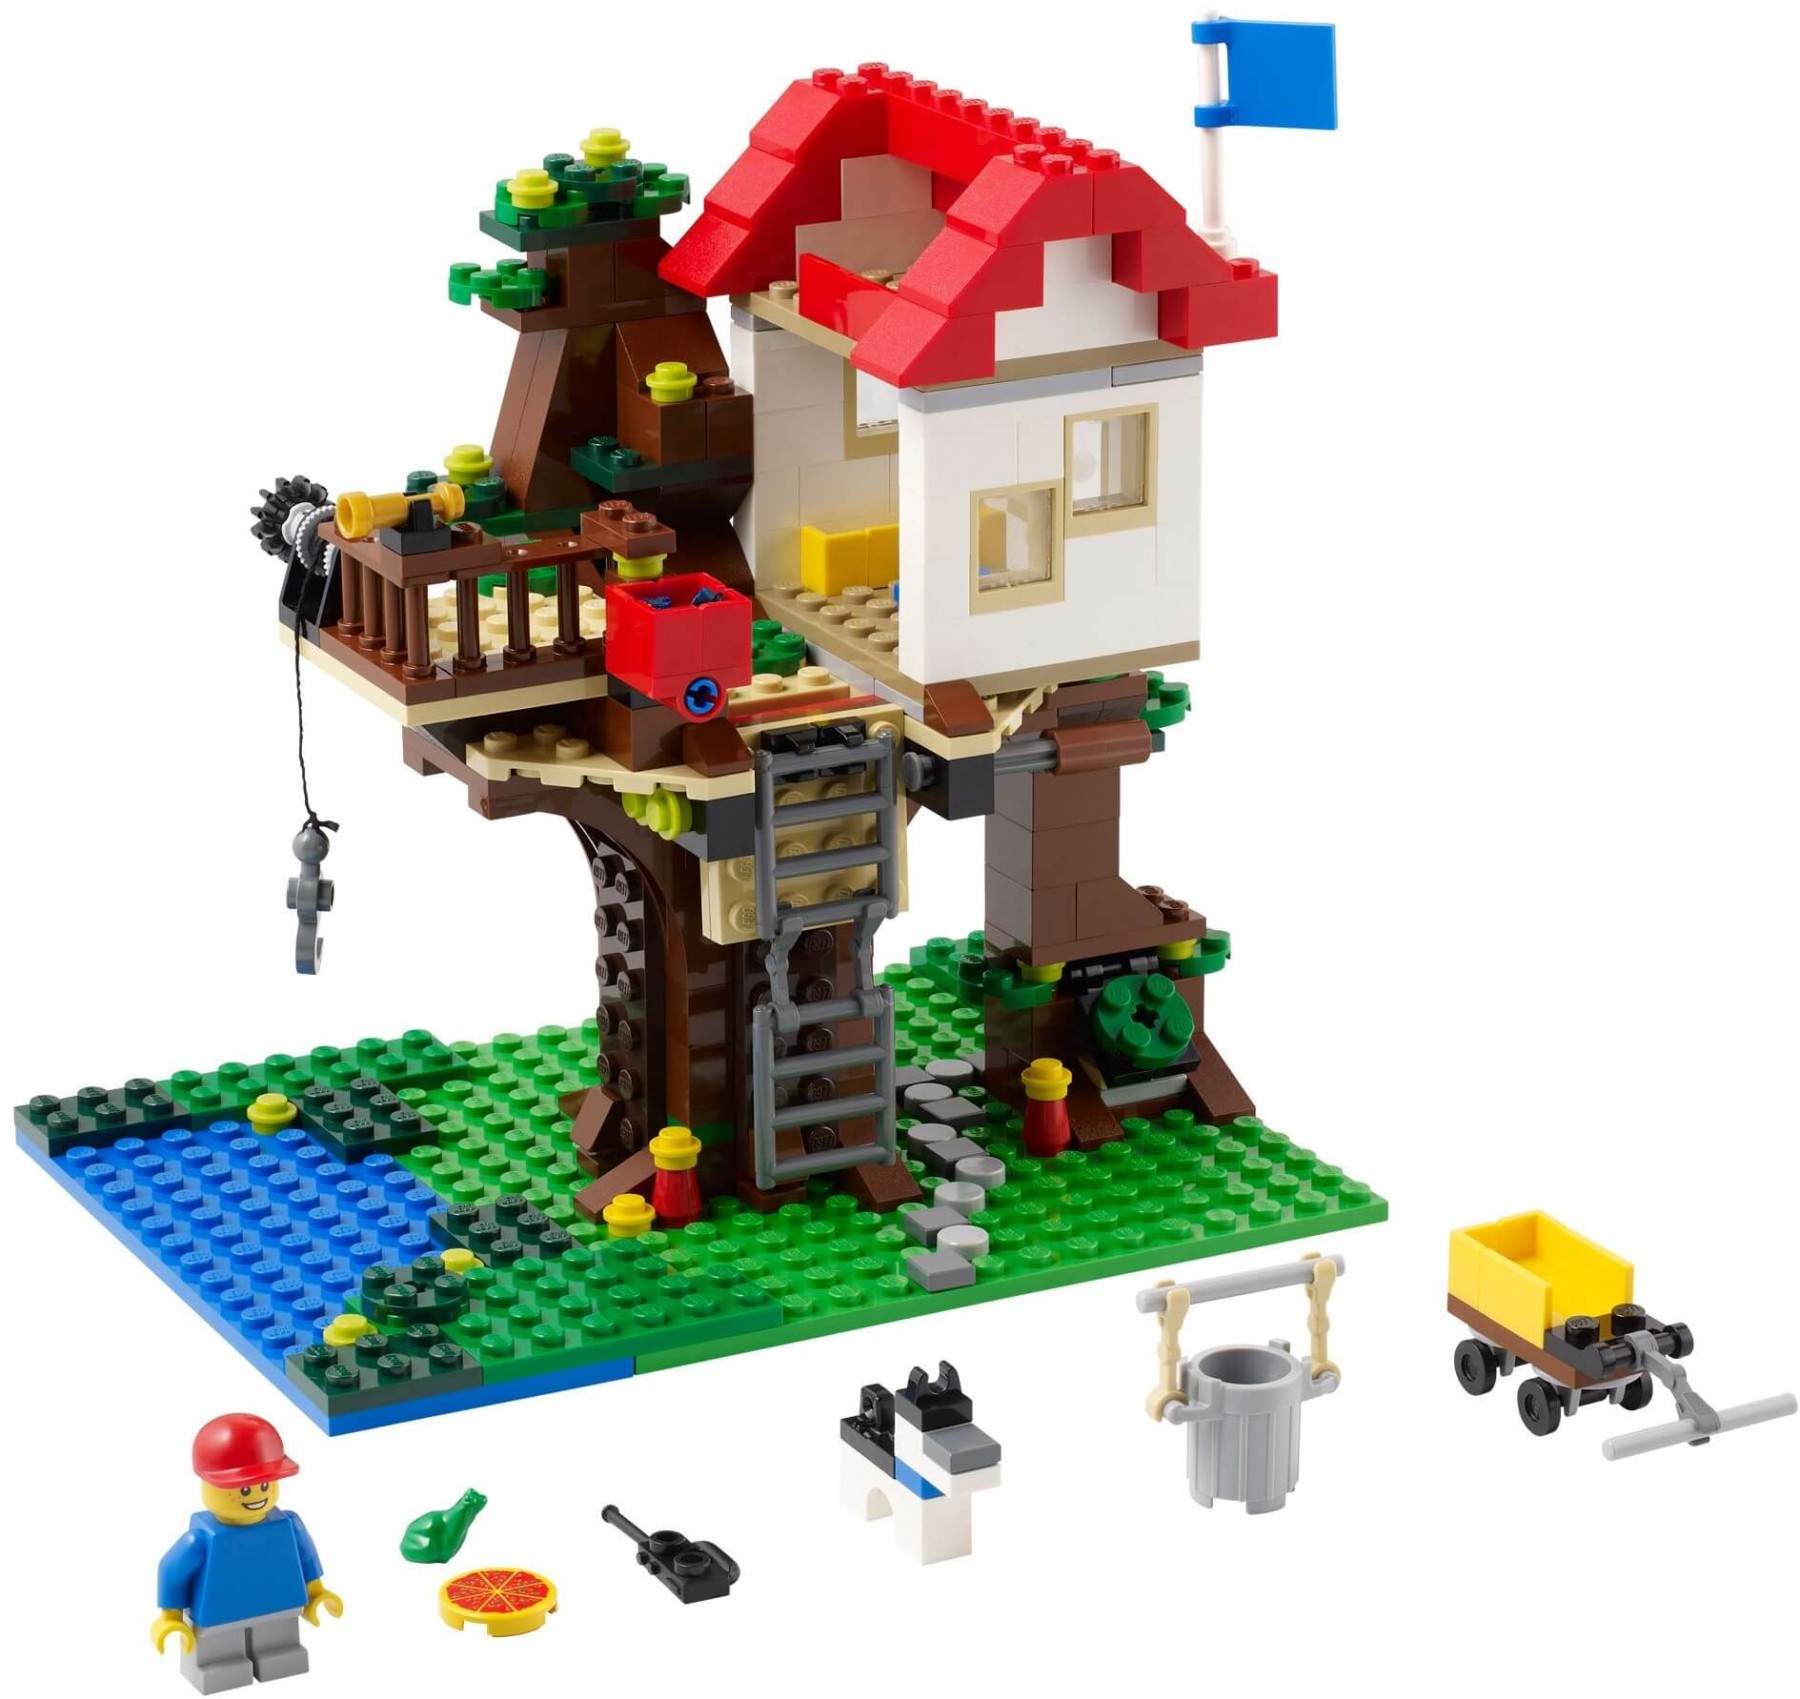 Toàn bộ các chi tiết sẽ xuất hiện trong bộ đồ chơi Lego Creator 31010 - Nhà Trên Cây